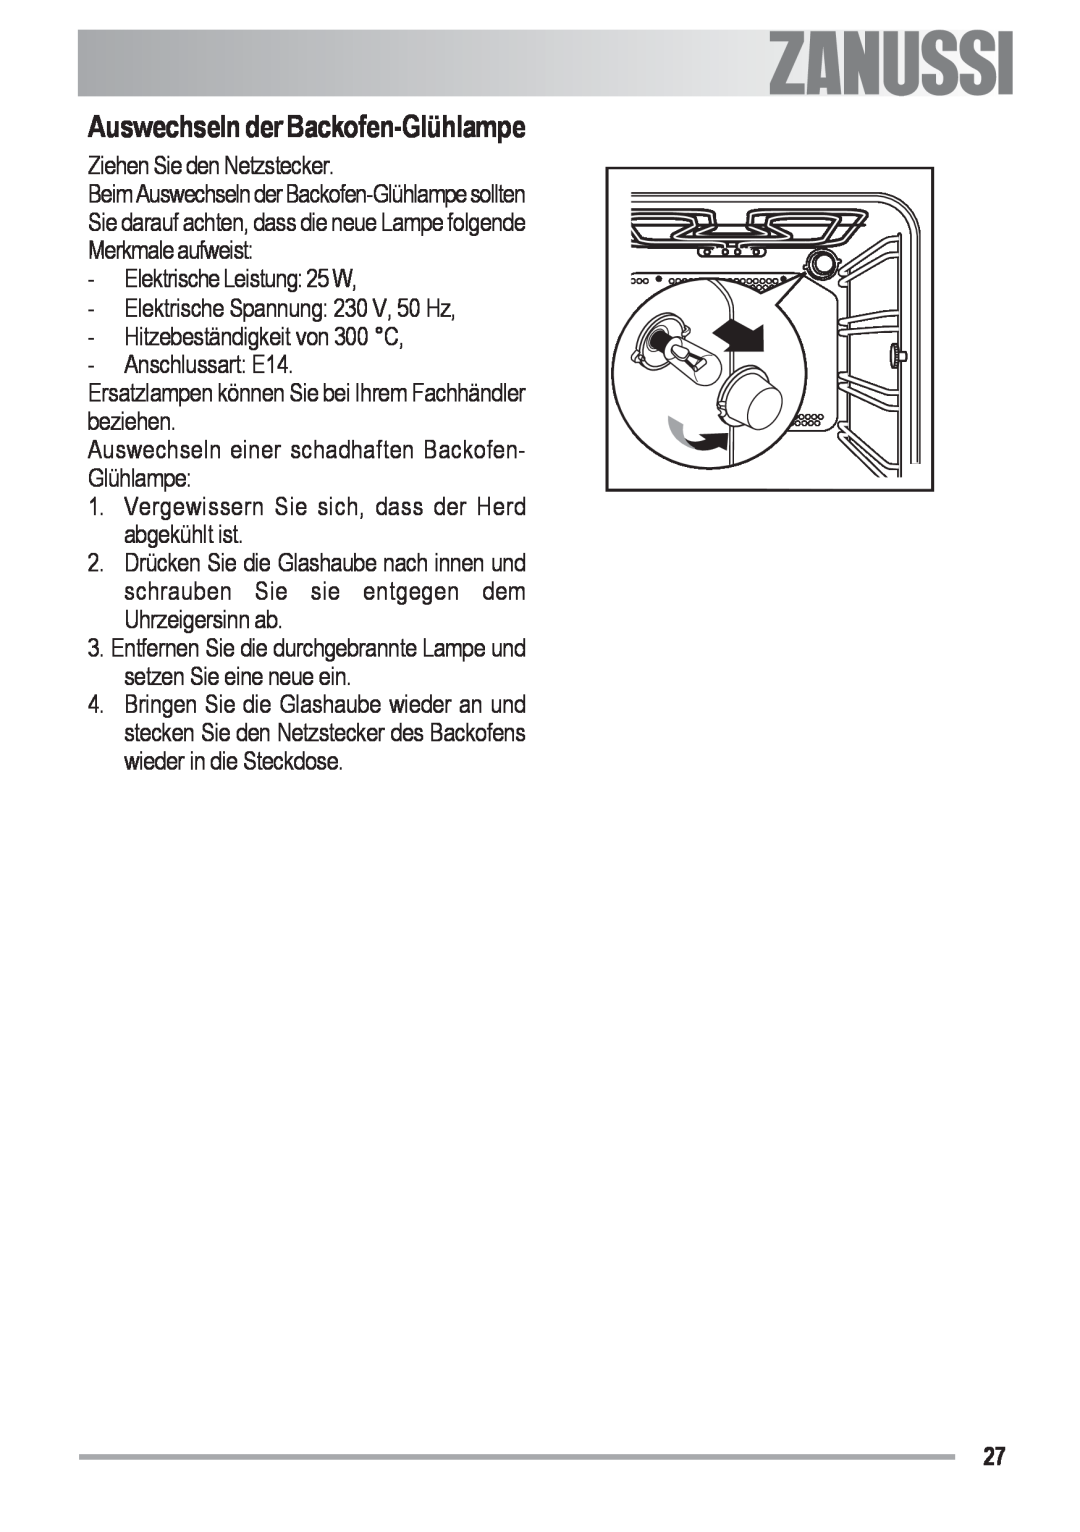 Zanussi ZOB 590 manual Auswechseln der Backofen-Glühlampe, Ziehen Sie den Netzstecker, Electrolux 